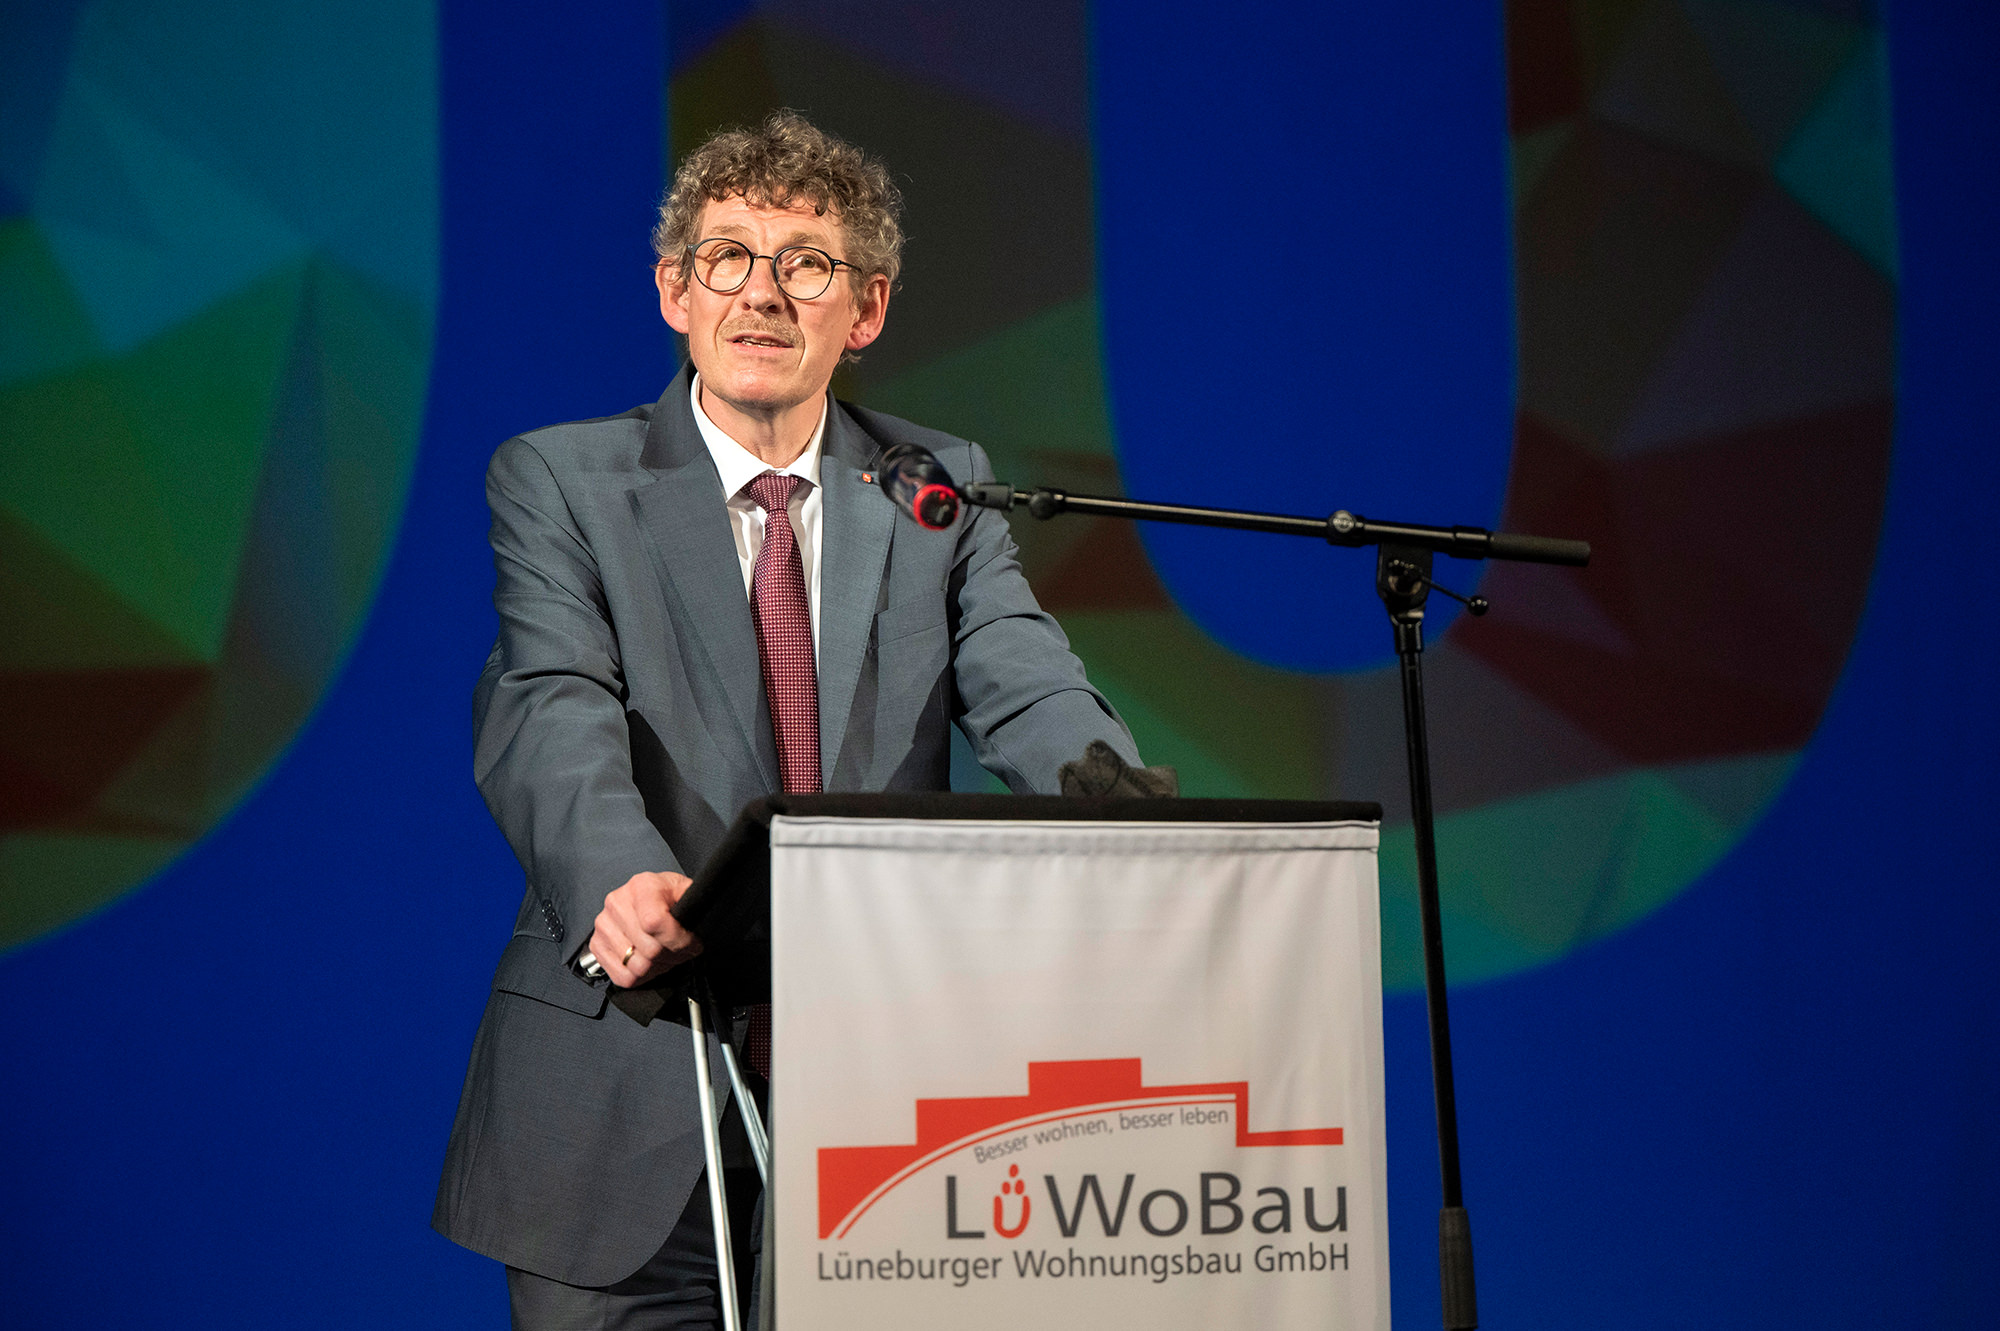 LüWoBau feiert ihr 100-jähriges Bestehen am 2. Mai 2022 im Theater Lüneburg